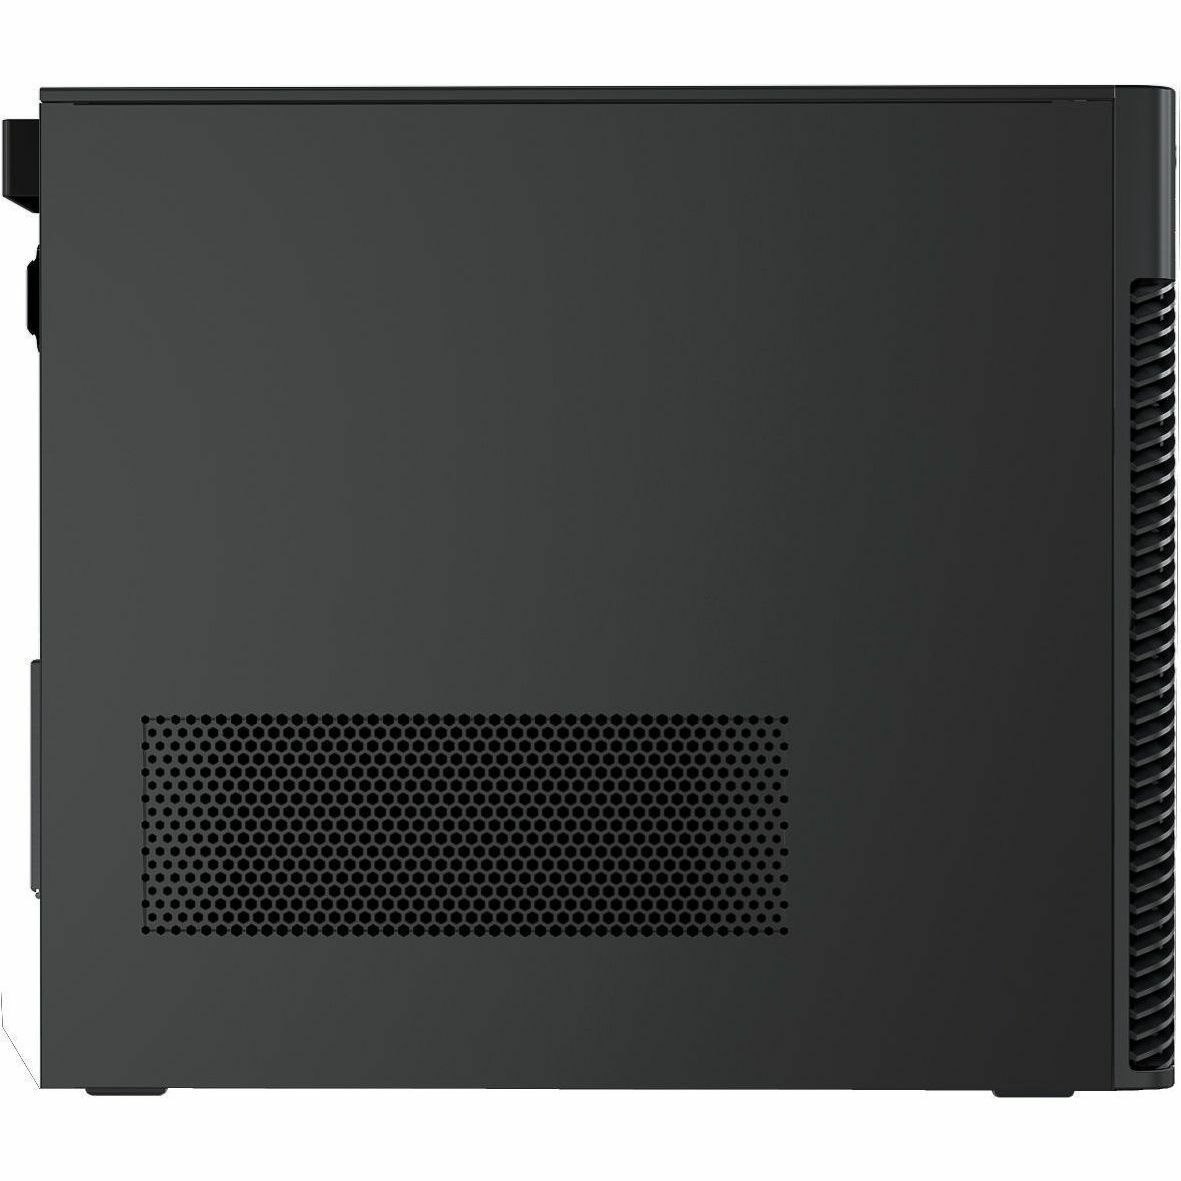 Dell Precision 3000 3680 Workstation - Intel Core i7 14th Gen i7-14700K - 32 GB - 1 TB SSD - Tower - Black